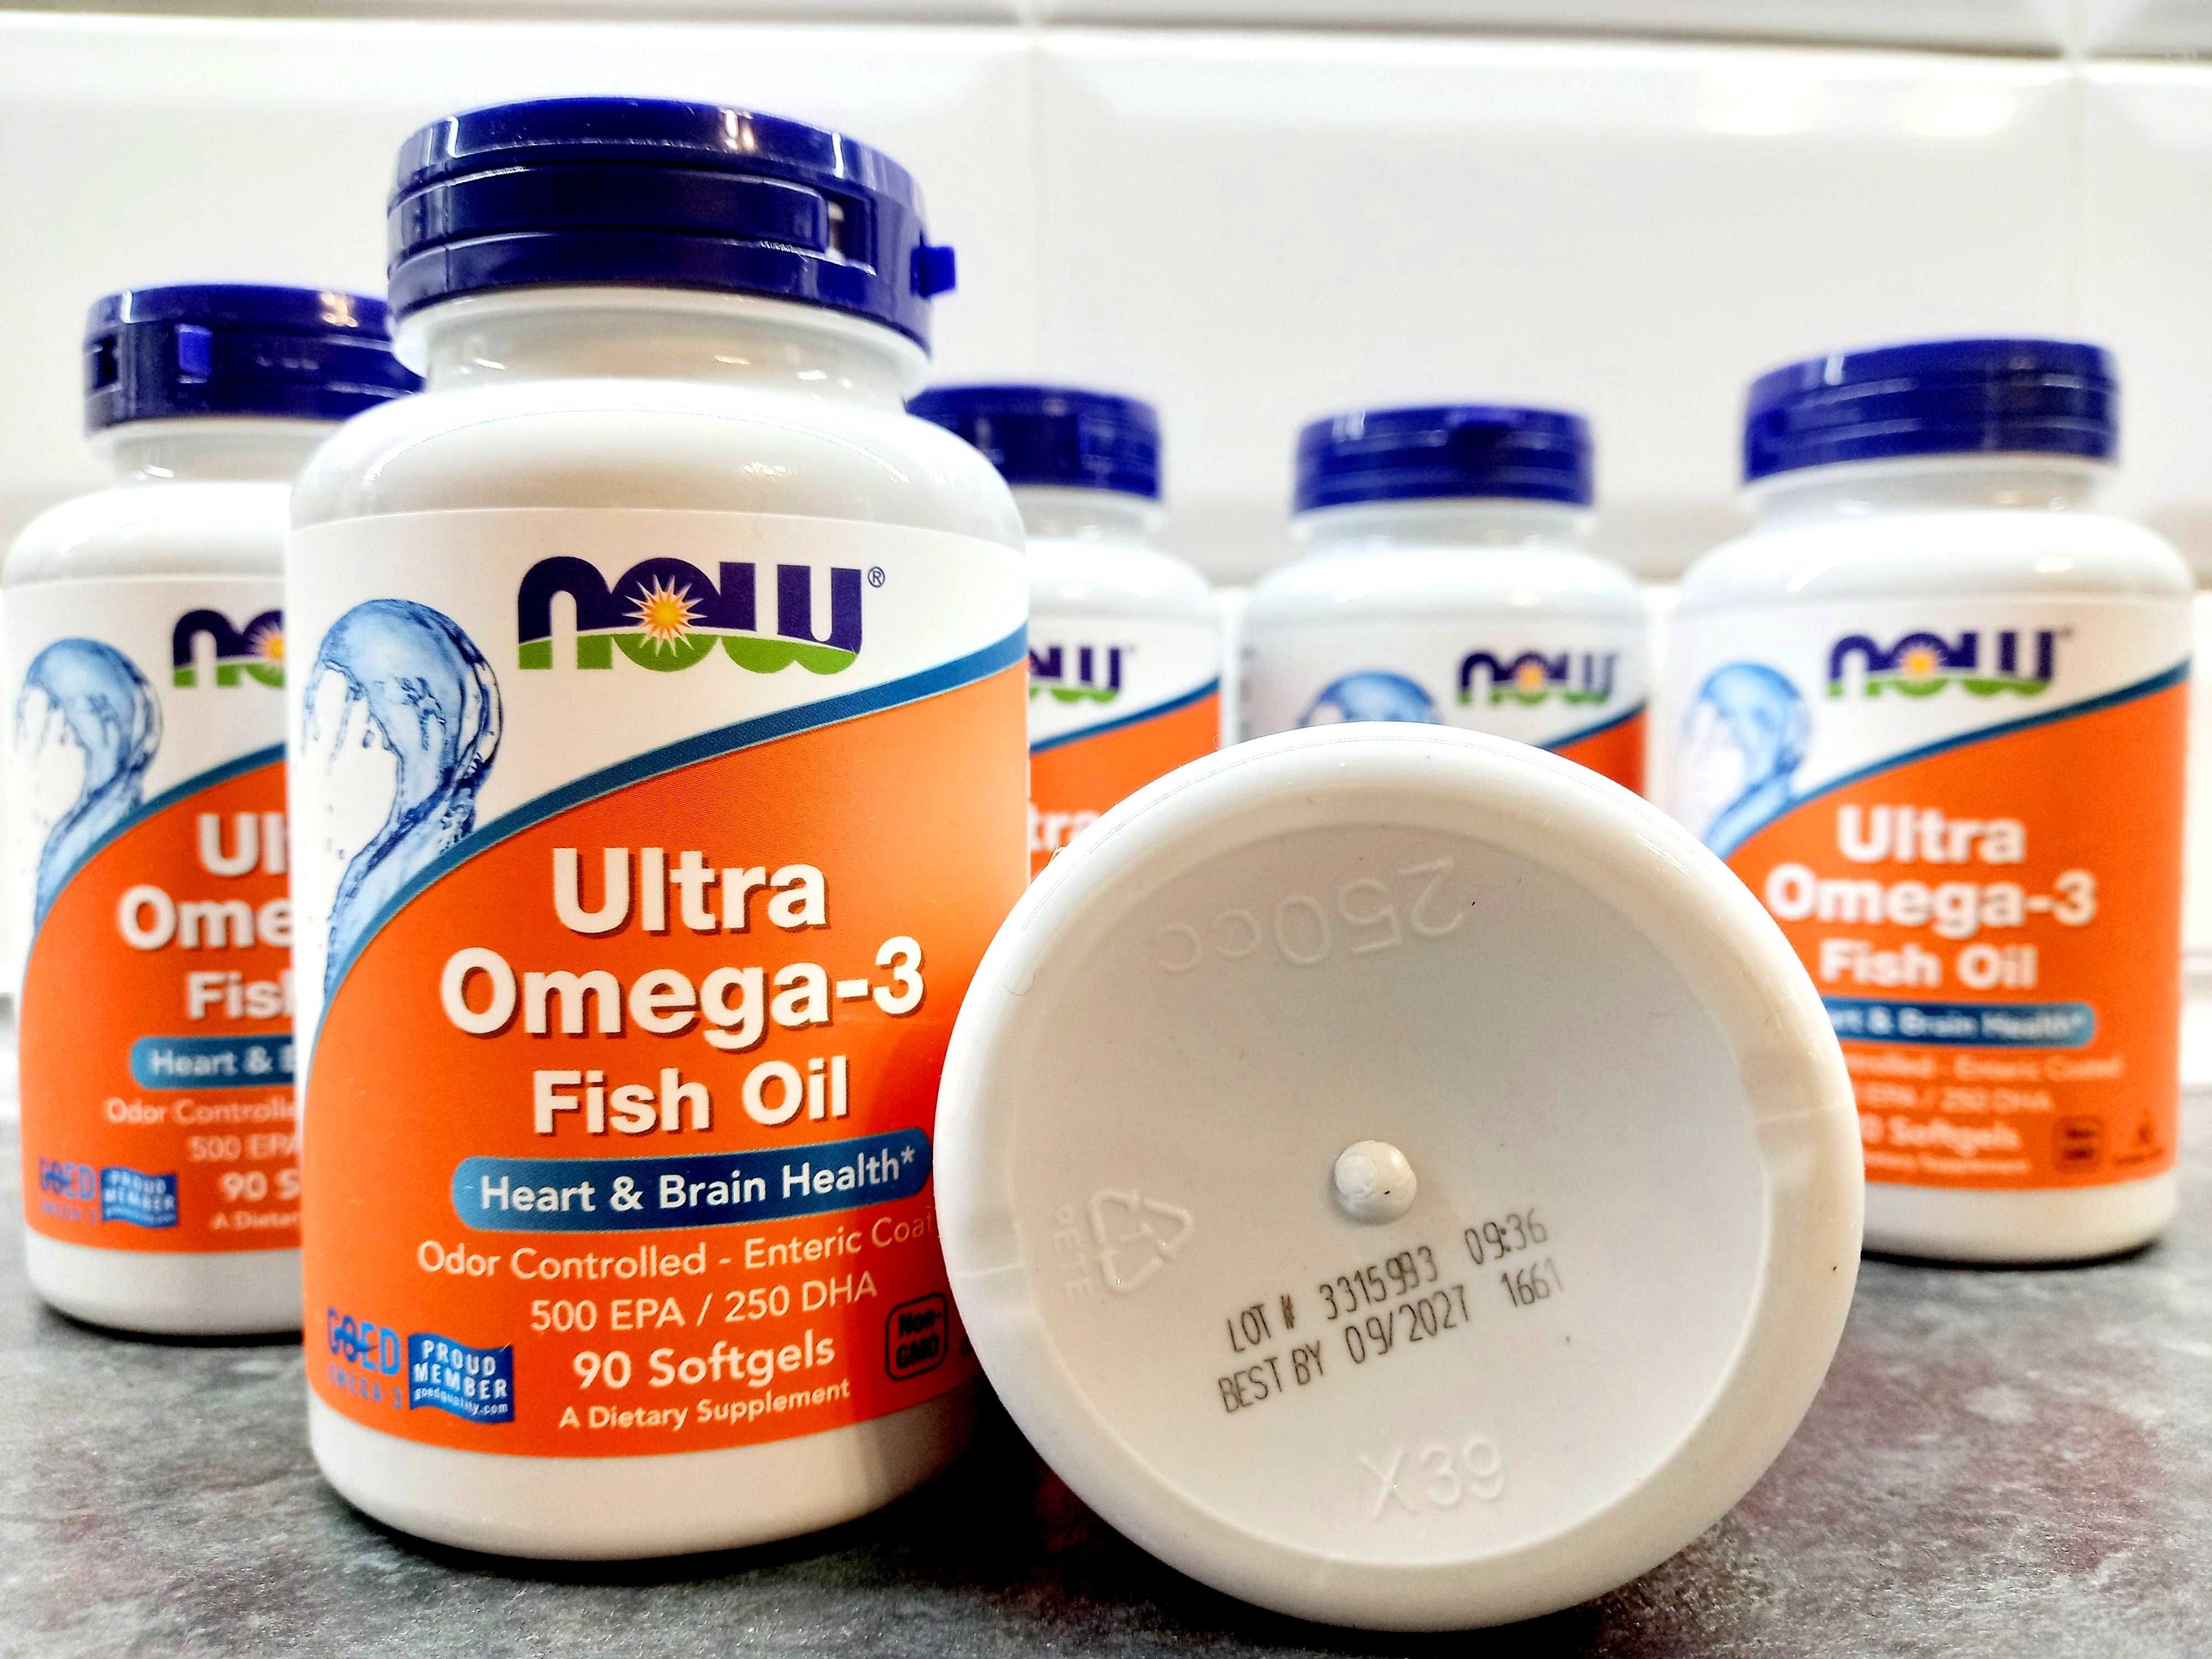 Now Foods, Ultra Omega-3 (90 капс.), омега-3 концентрат 500/250